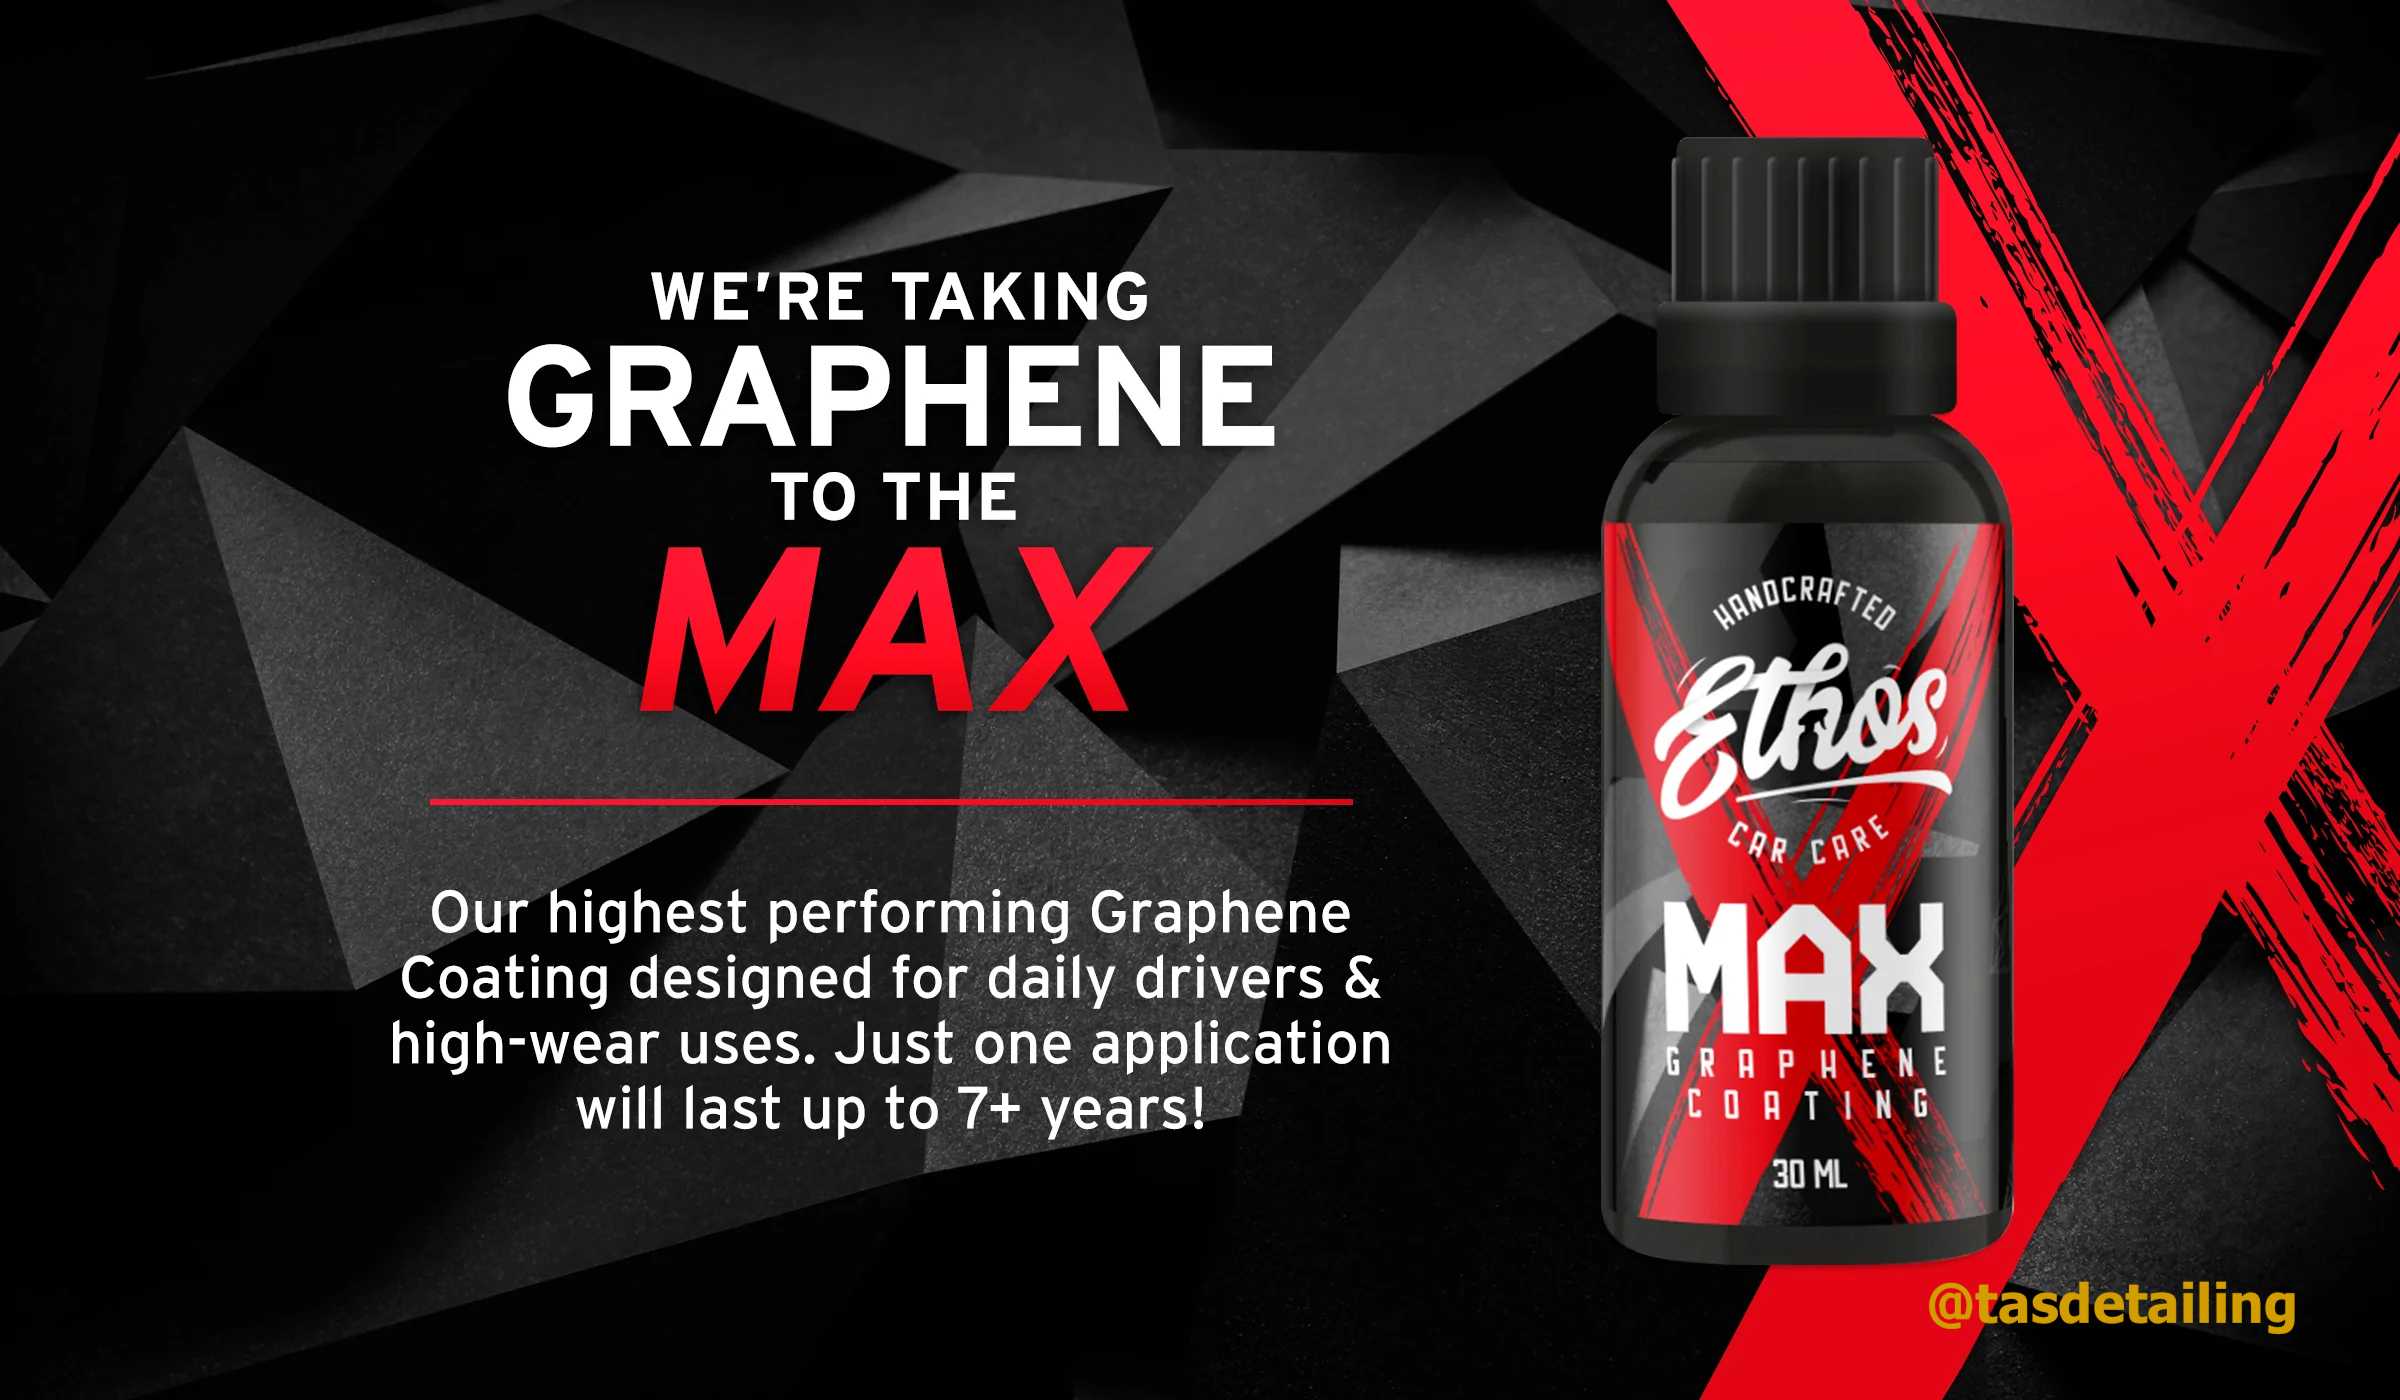 Best Graphene coating, ethos Graphene max 7 year coating